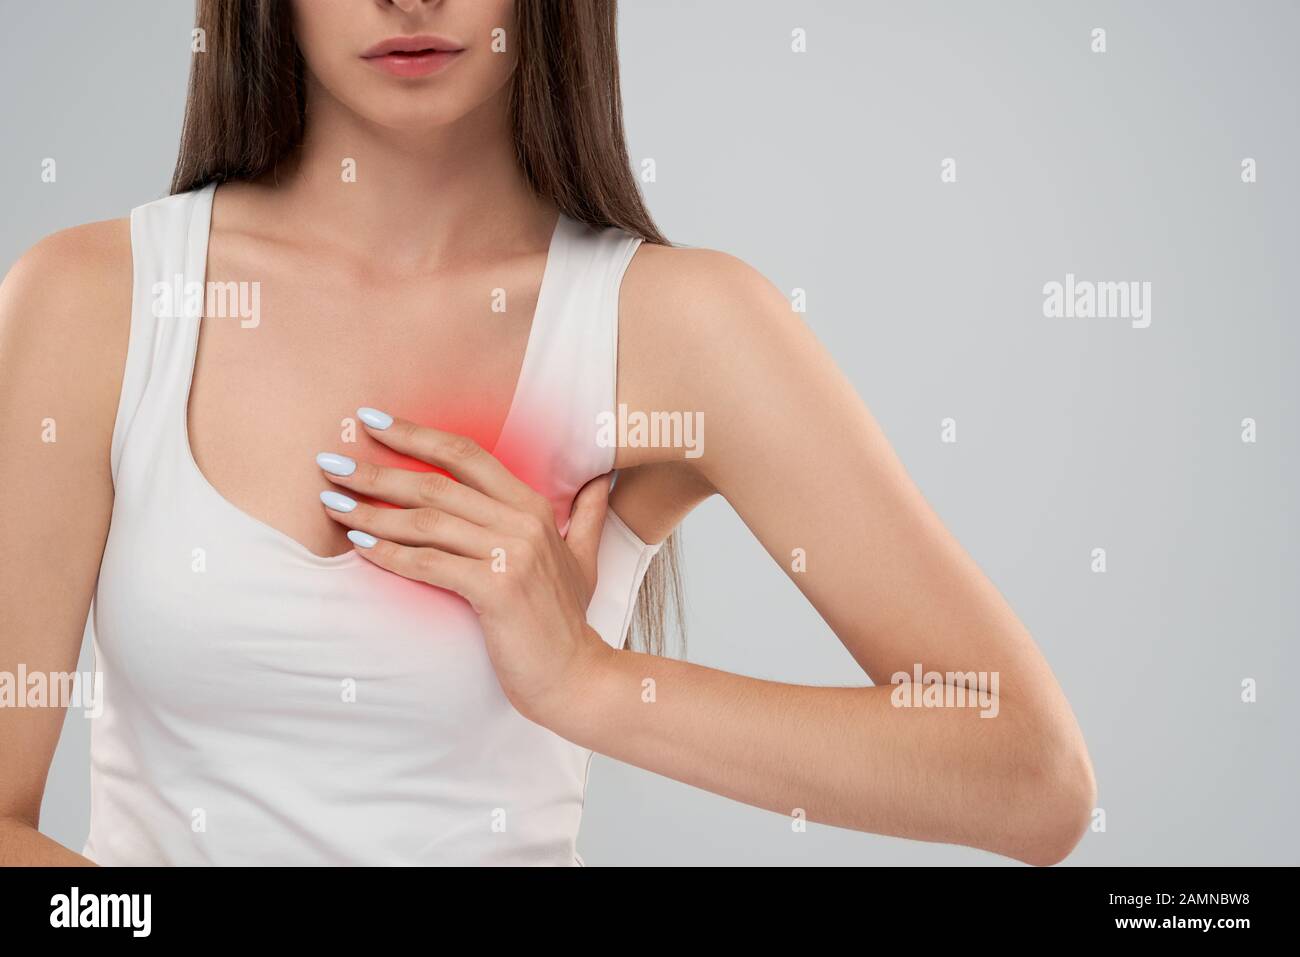 Clolse von Incognito kaukasische Frau in weißem Hemd Posing über Grau isoliert Hintergrund und berühren die Brust mit der Hand, weil der Kummer. Crop von brunette leiden unter Schmerzen im Herzen. Stockfoto